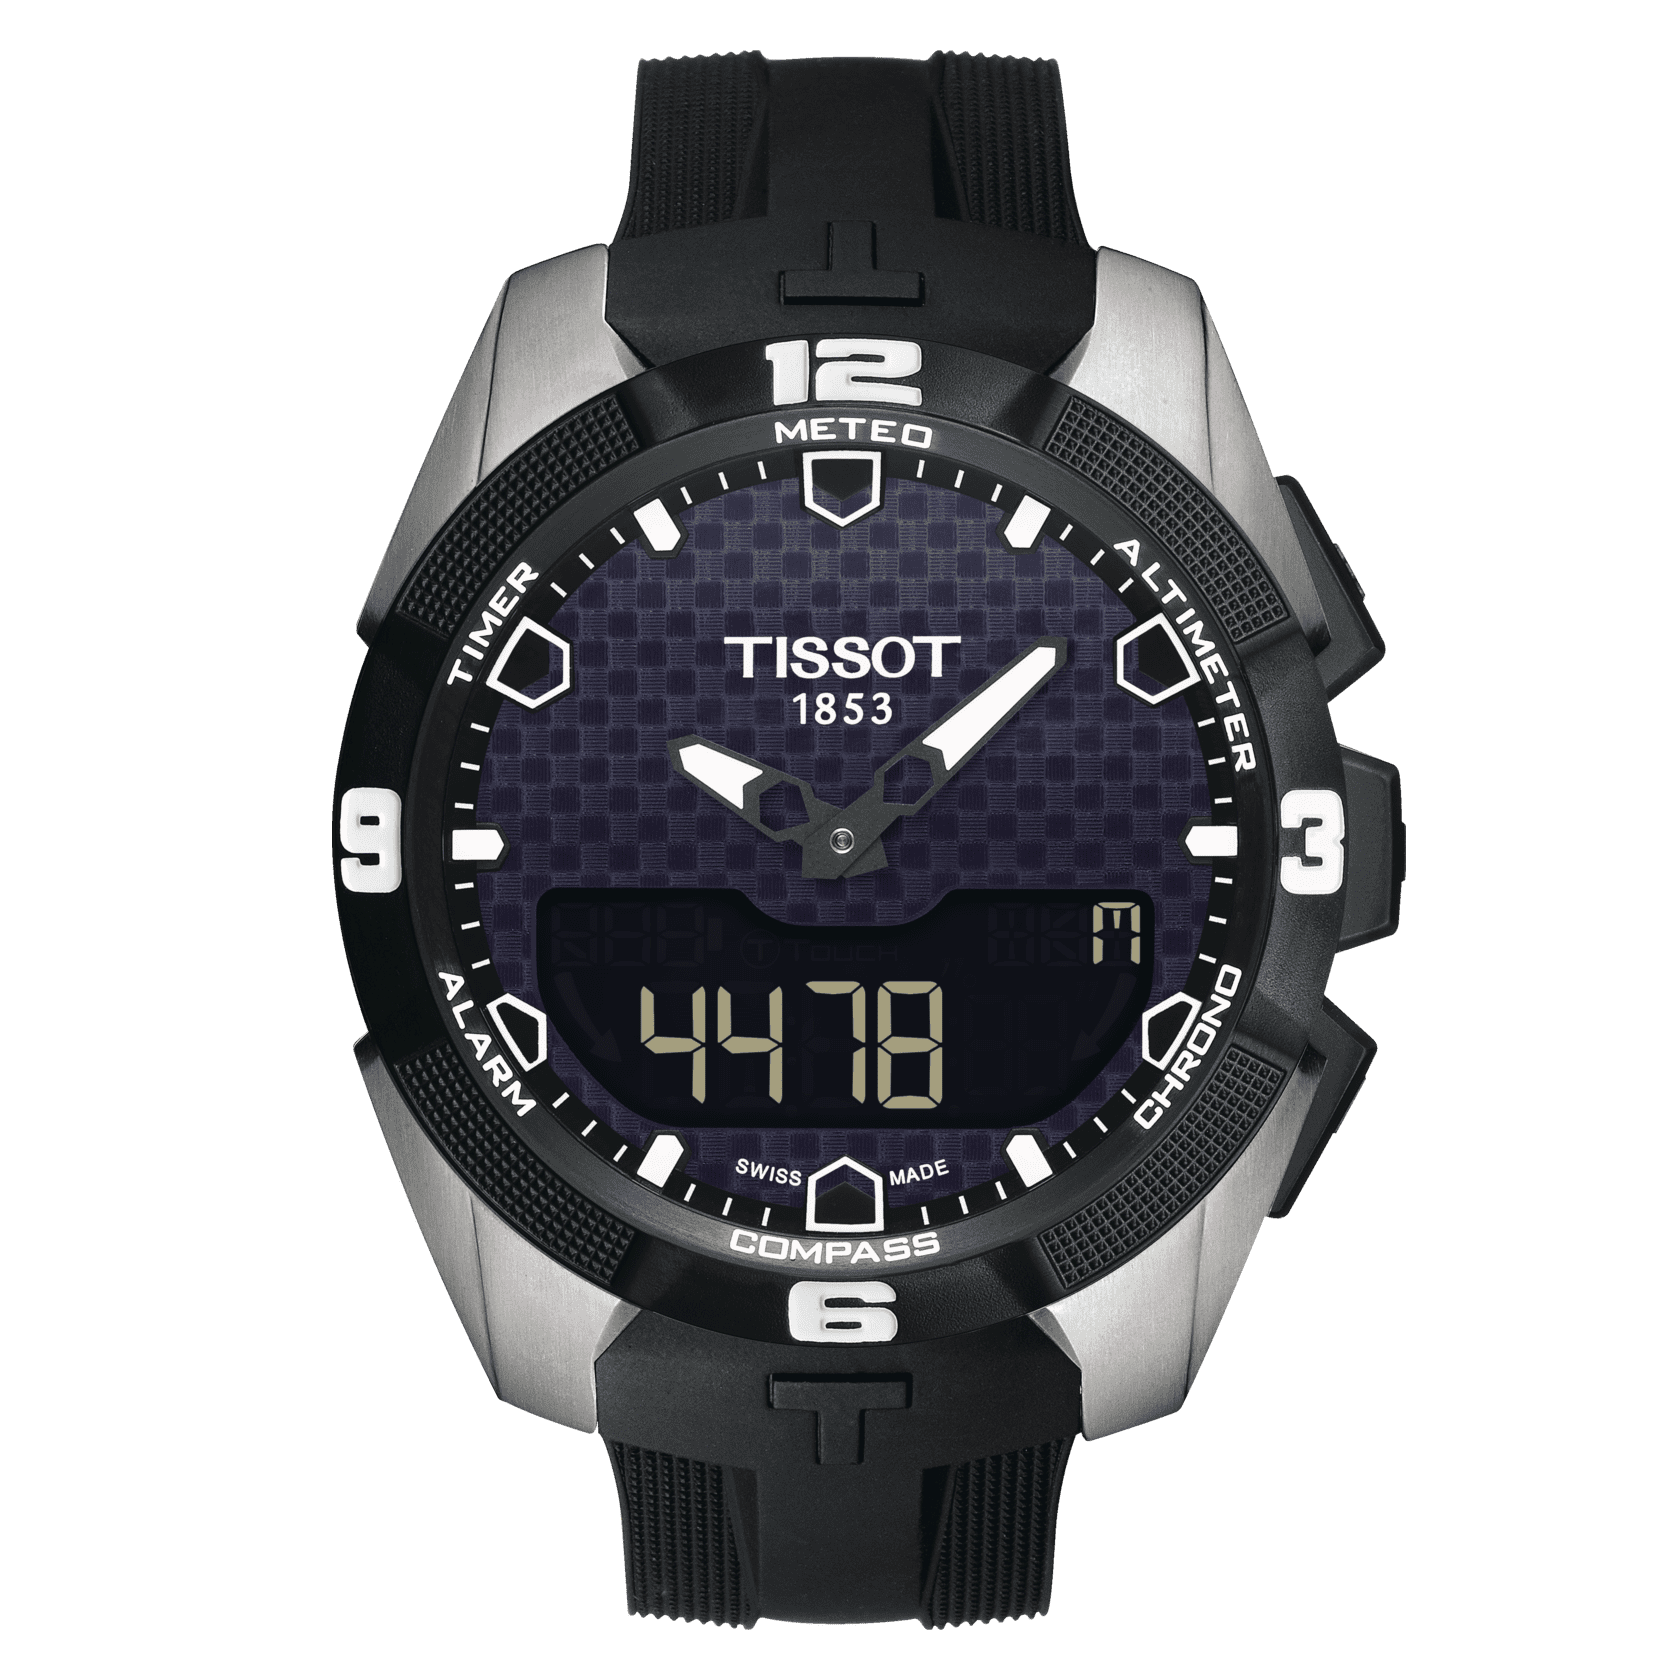 St Dupont Fake Watch